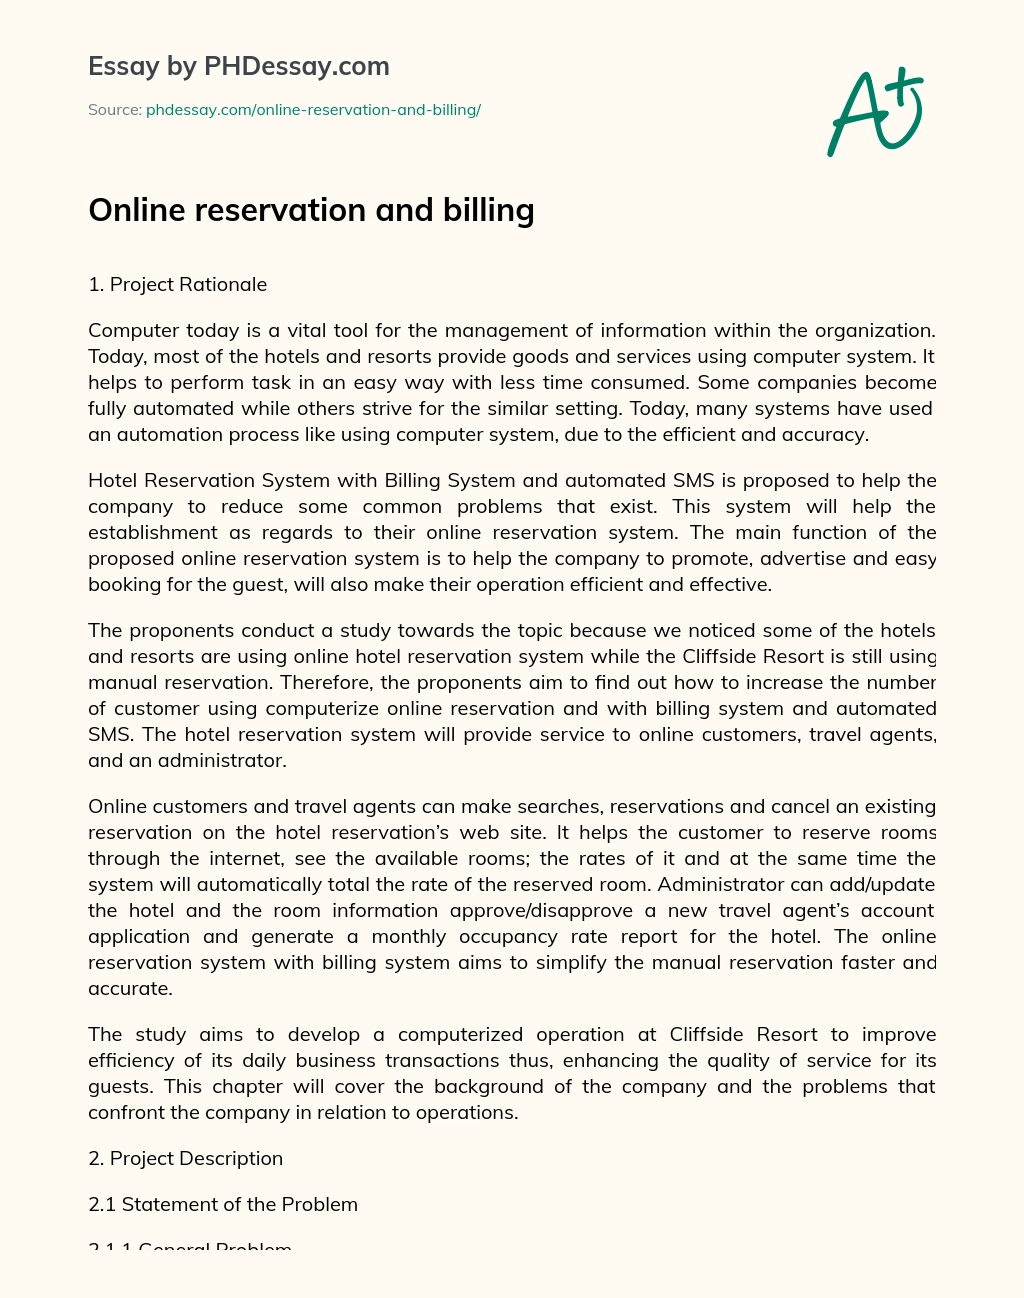 Online reservation and billing essay